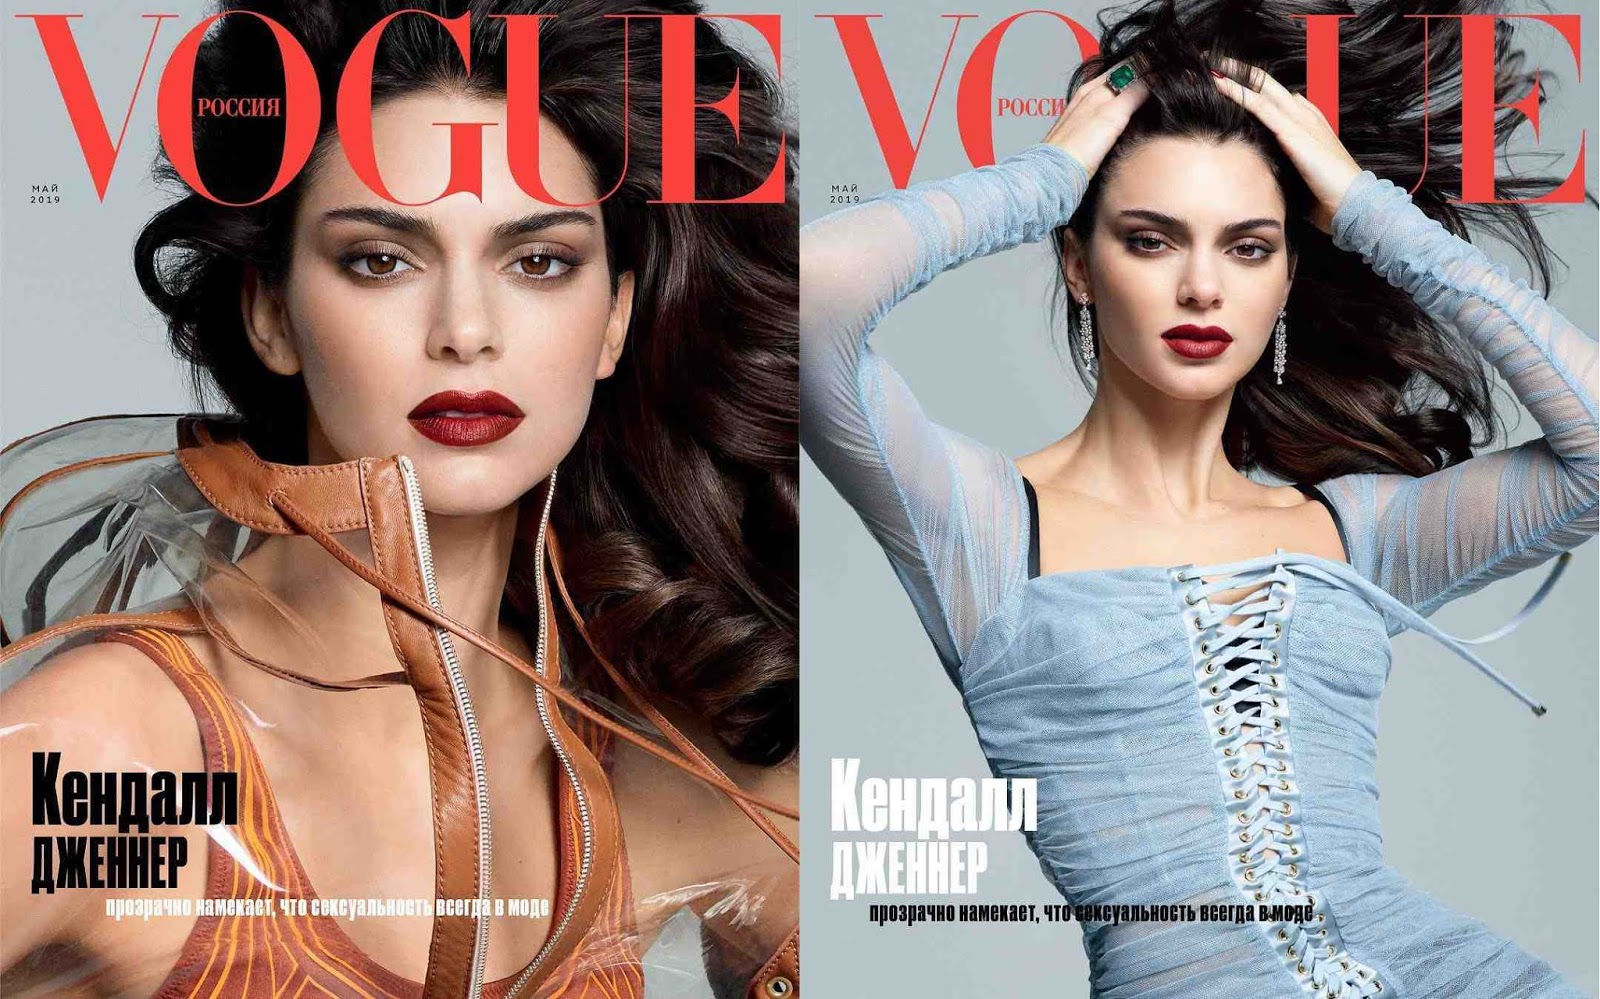 Изменения май 2019. Кендалл Дженнер для Vogue. Vogue Russia обложка Кендалл Дженнер. Кендалл Дженнер на обложке Vogue. Vogue Kendall Jenner обложка.